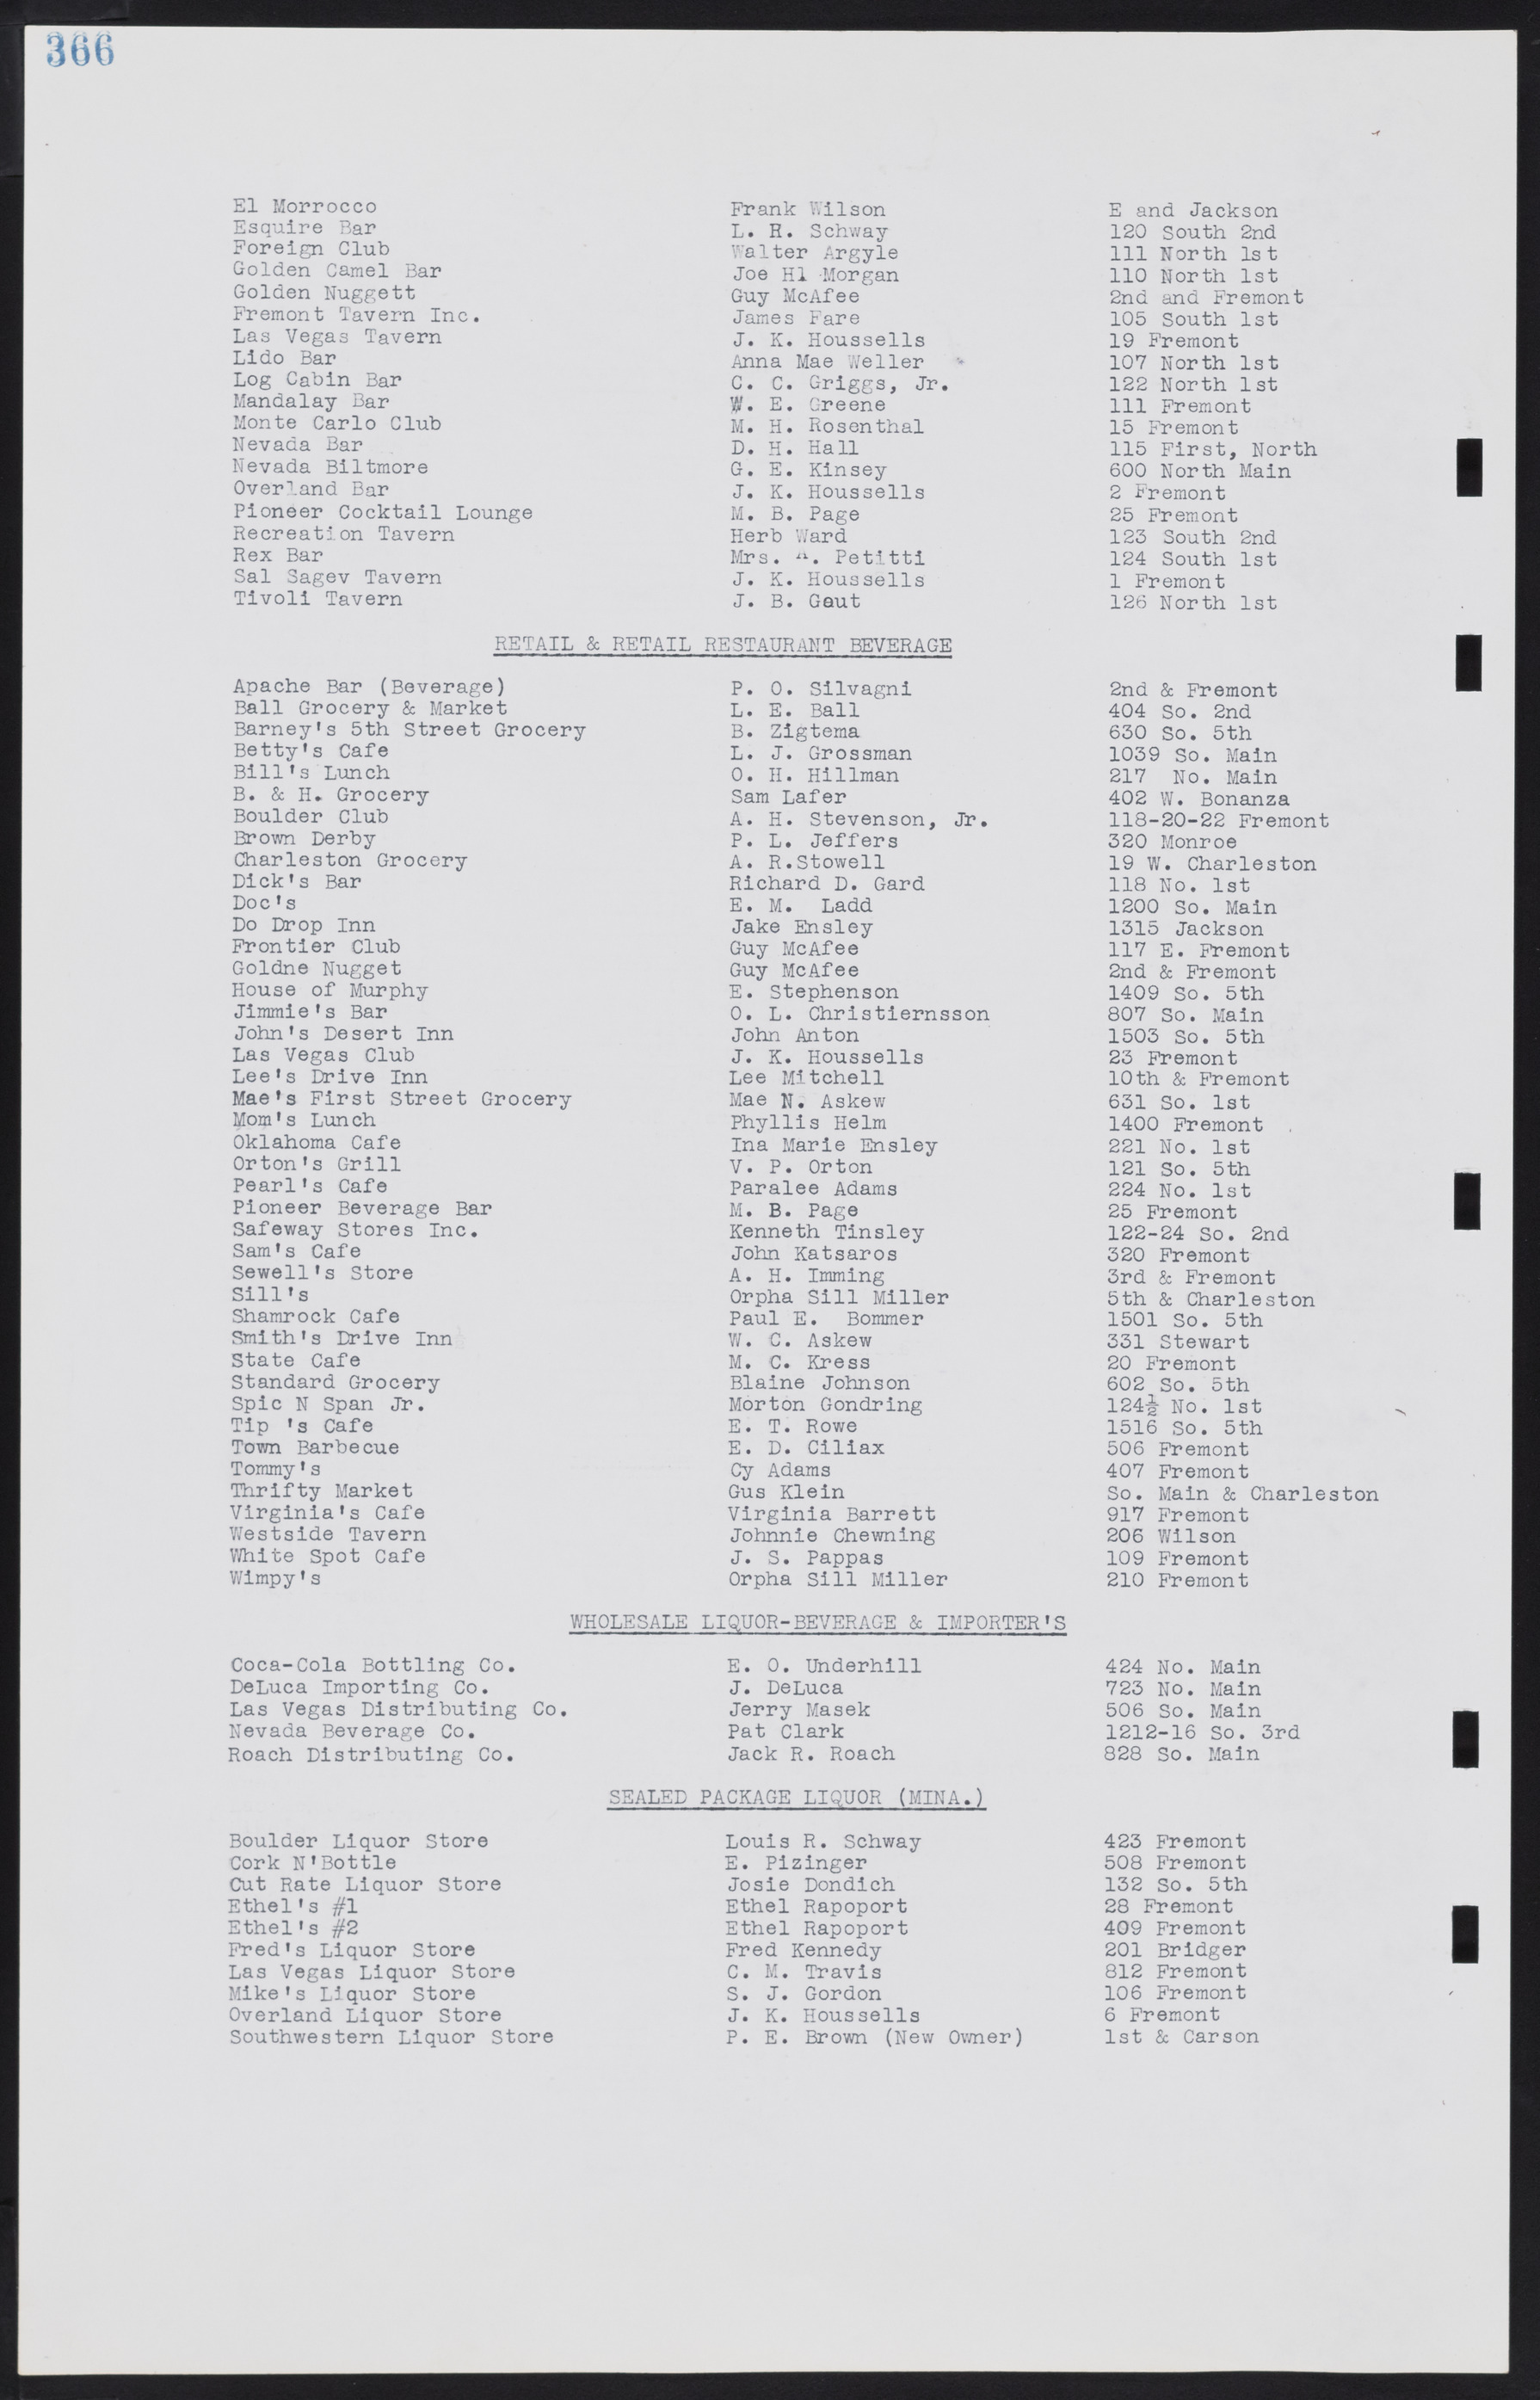 Las Vegas City Commission Minutes, August 11, 1942 to December 30, 1946, lvc000005-391